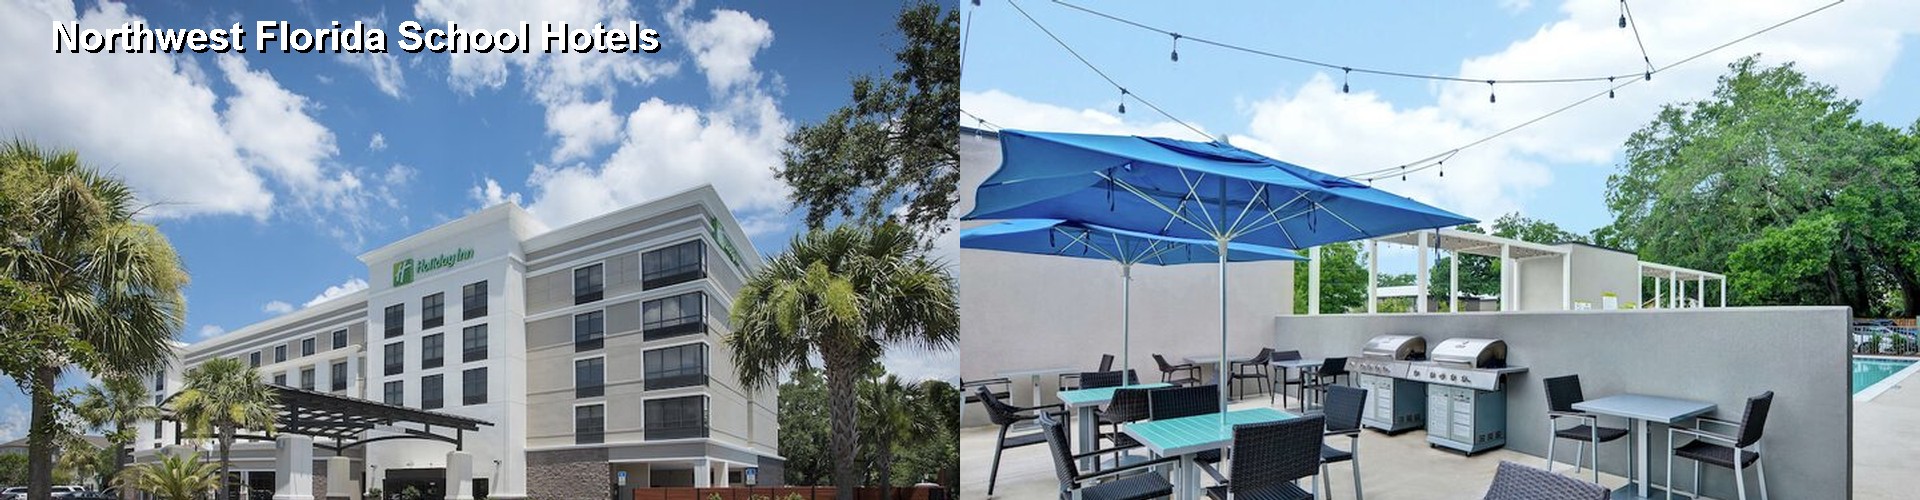 1 Best Hotels near Northwest Florida School